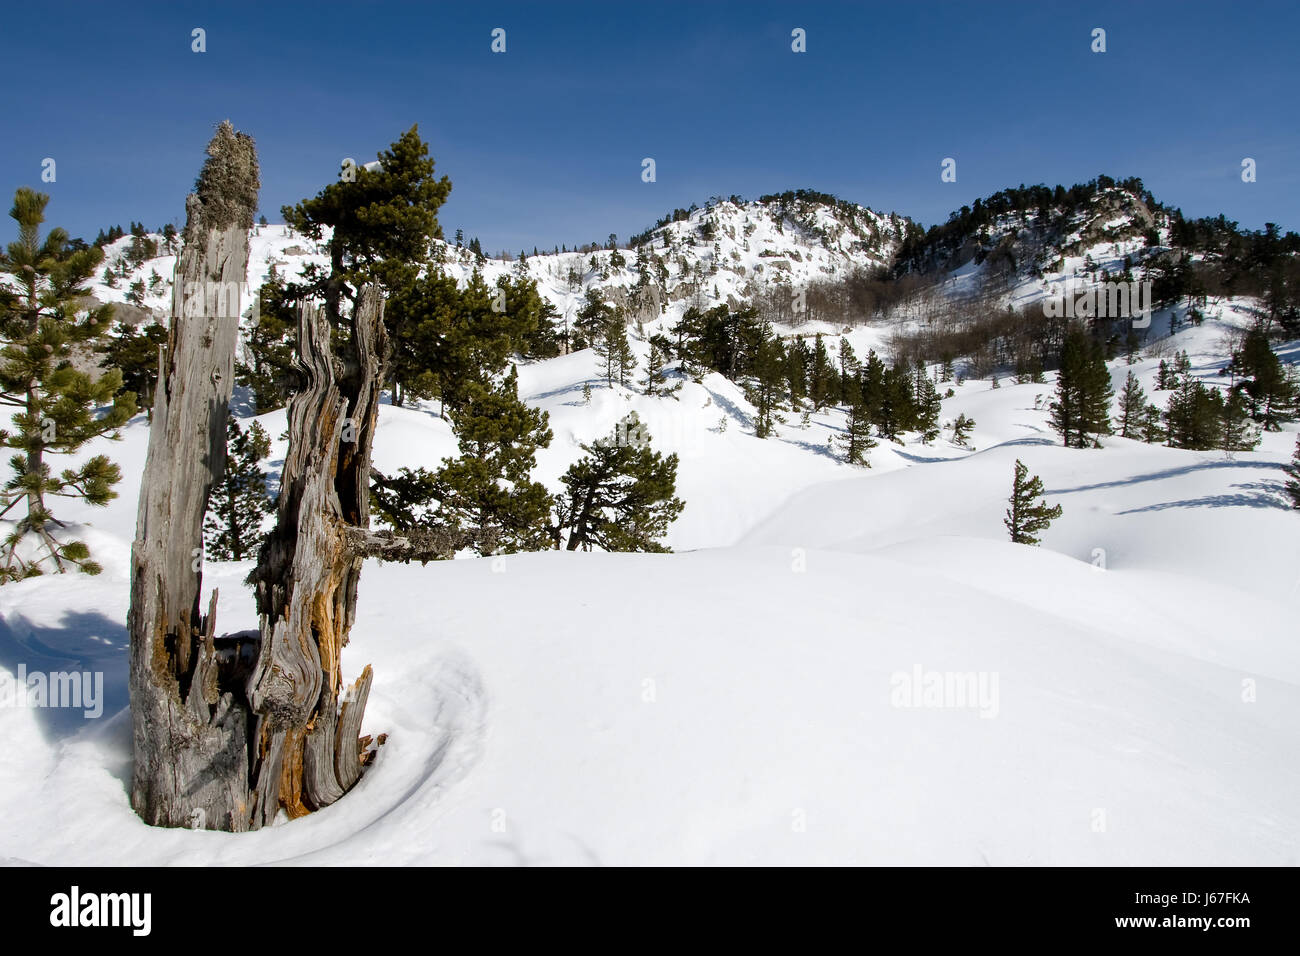 Espagne parc naturel pyrénées tronc d'arbre neige pin cocaïne coke drogue matériel Banque D'Images